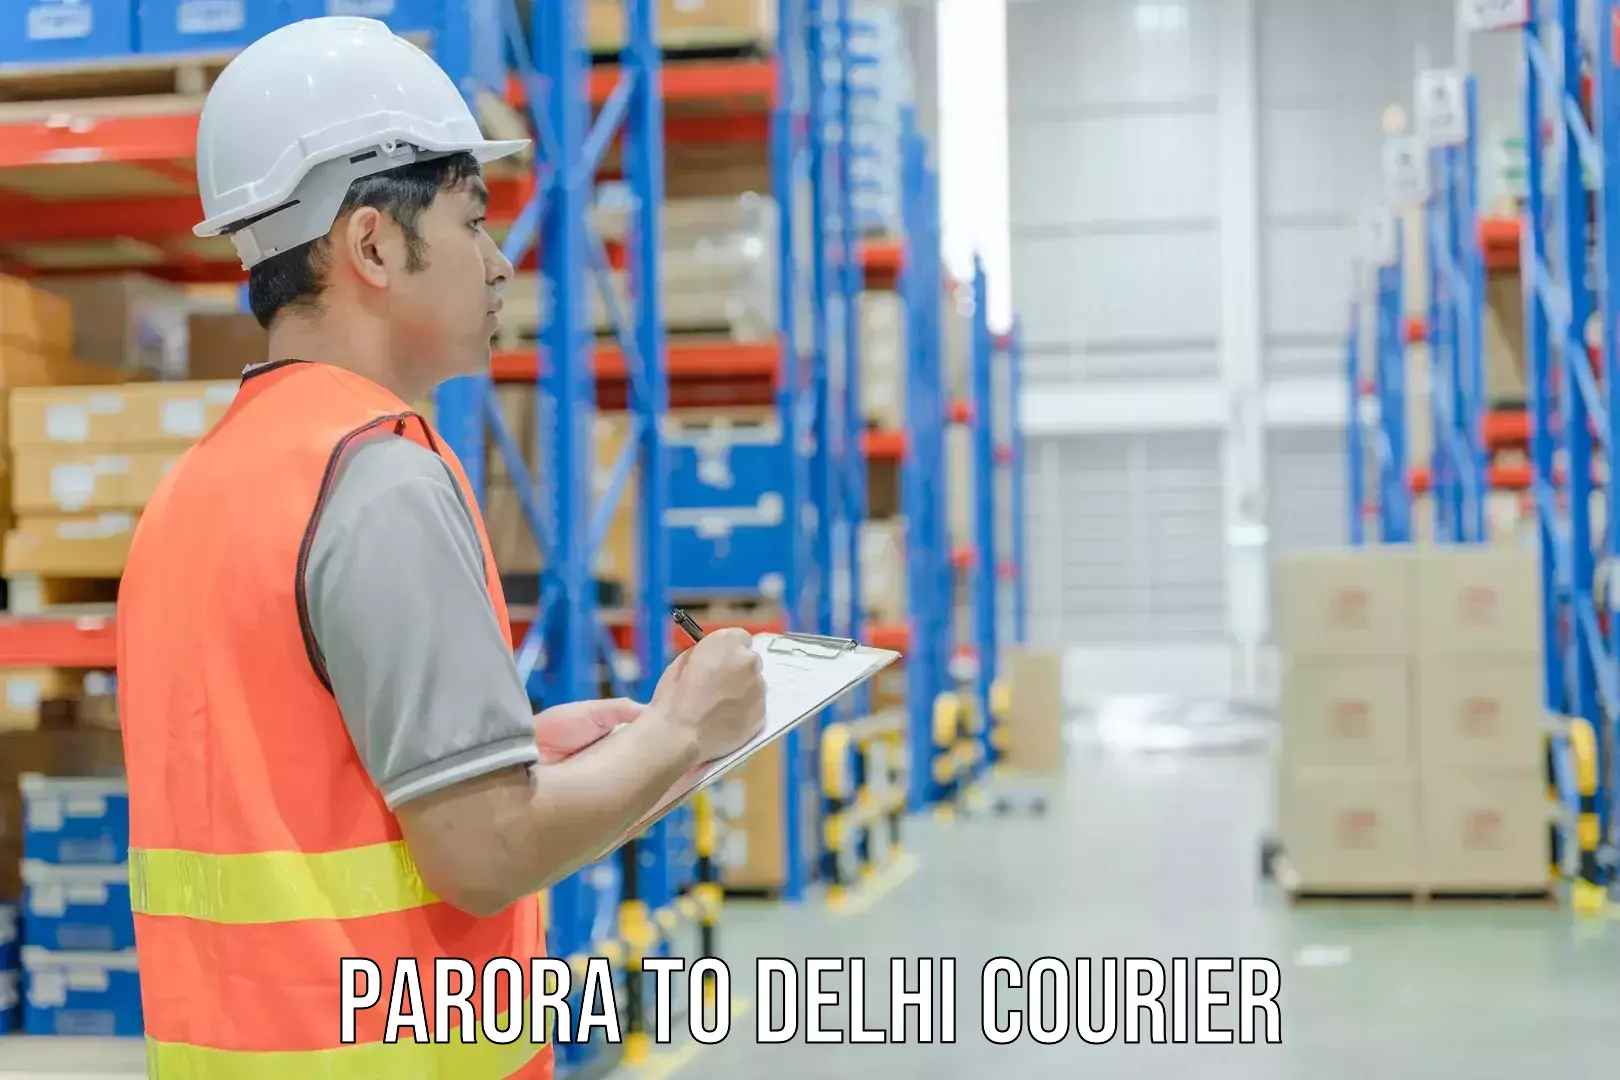 Express package handling Parora to Delhi